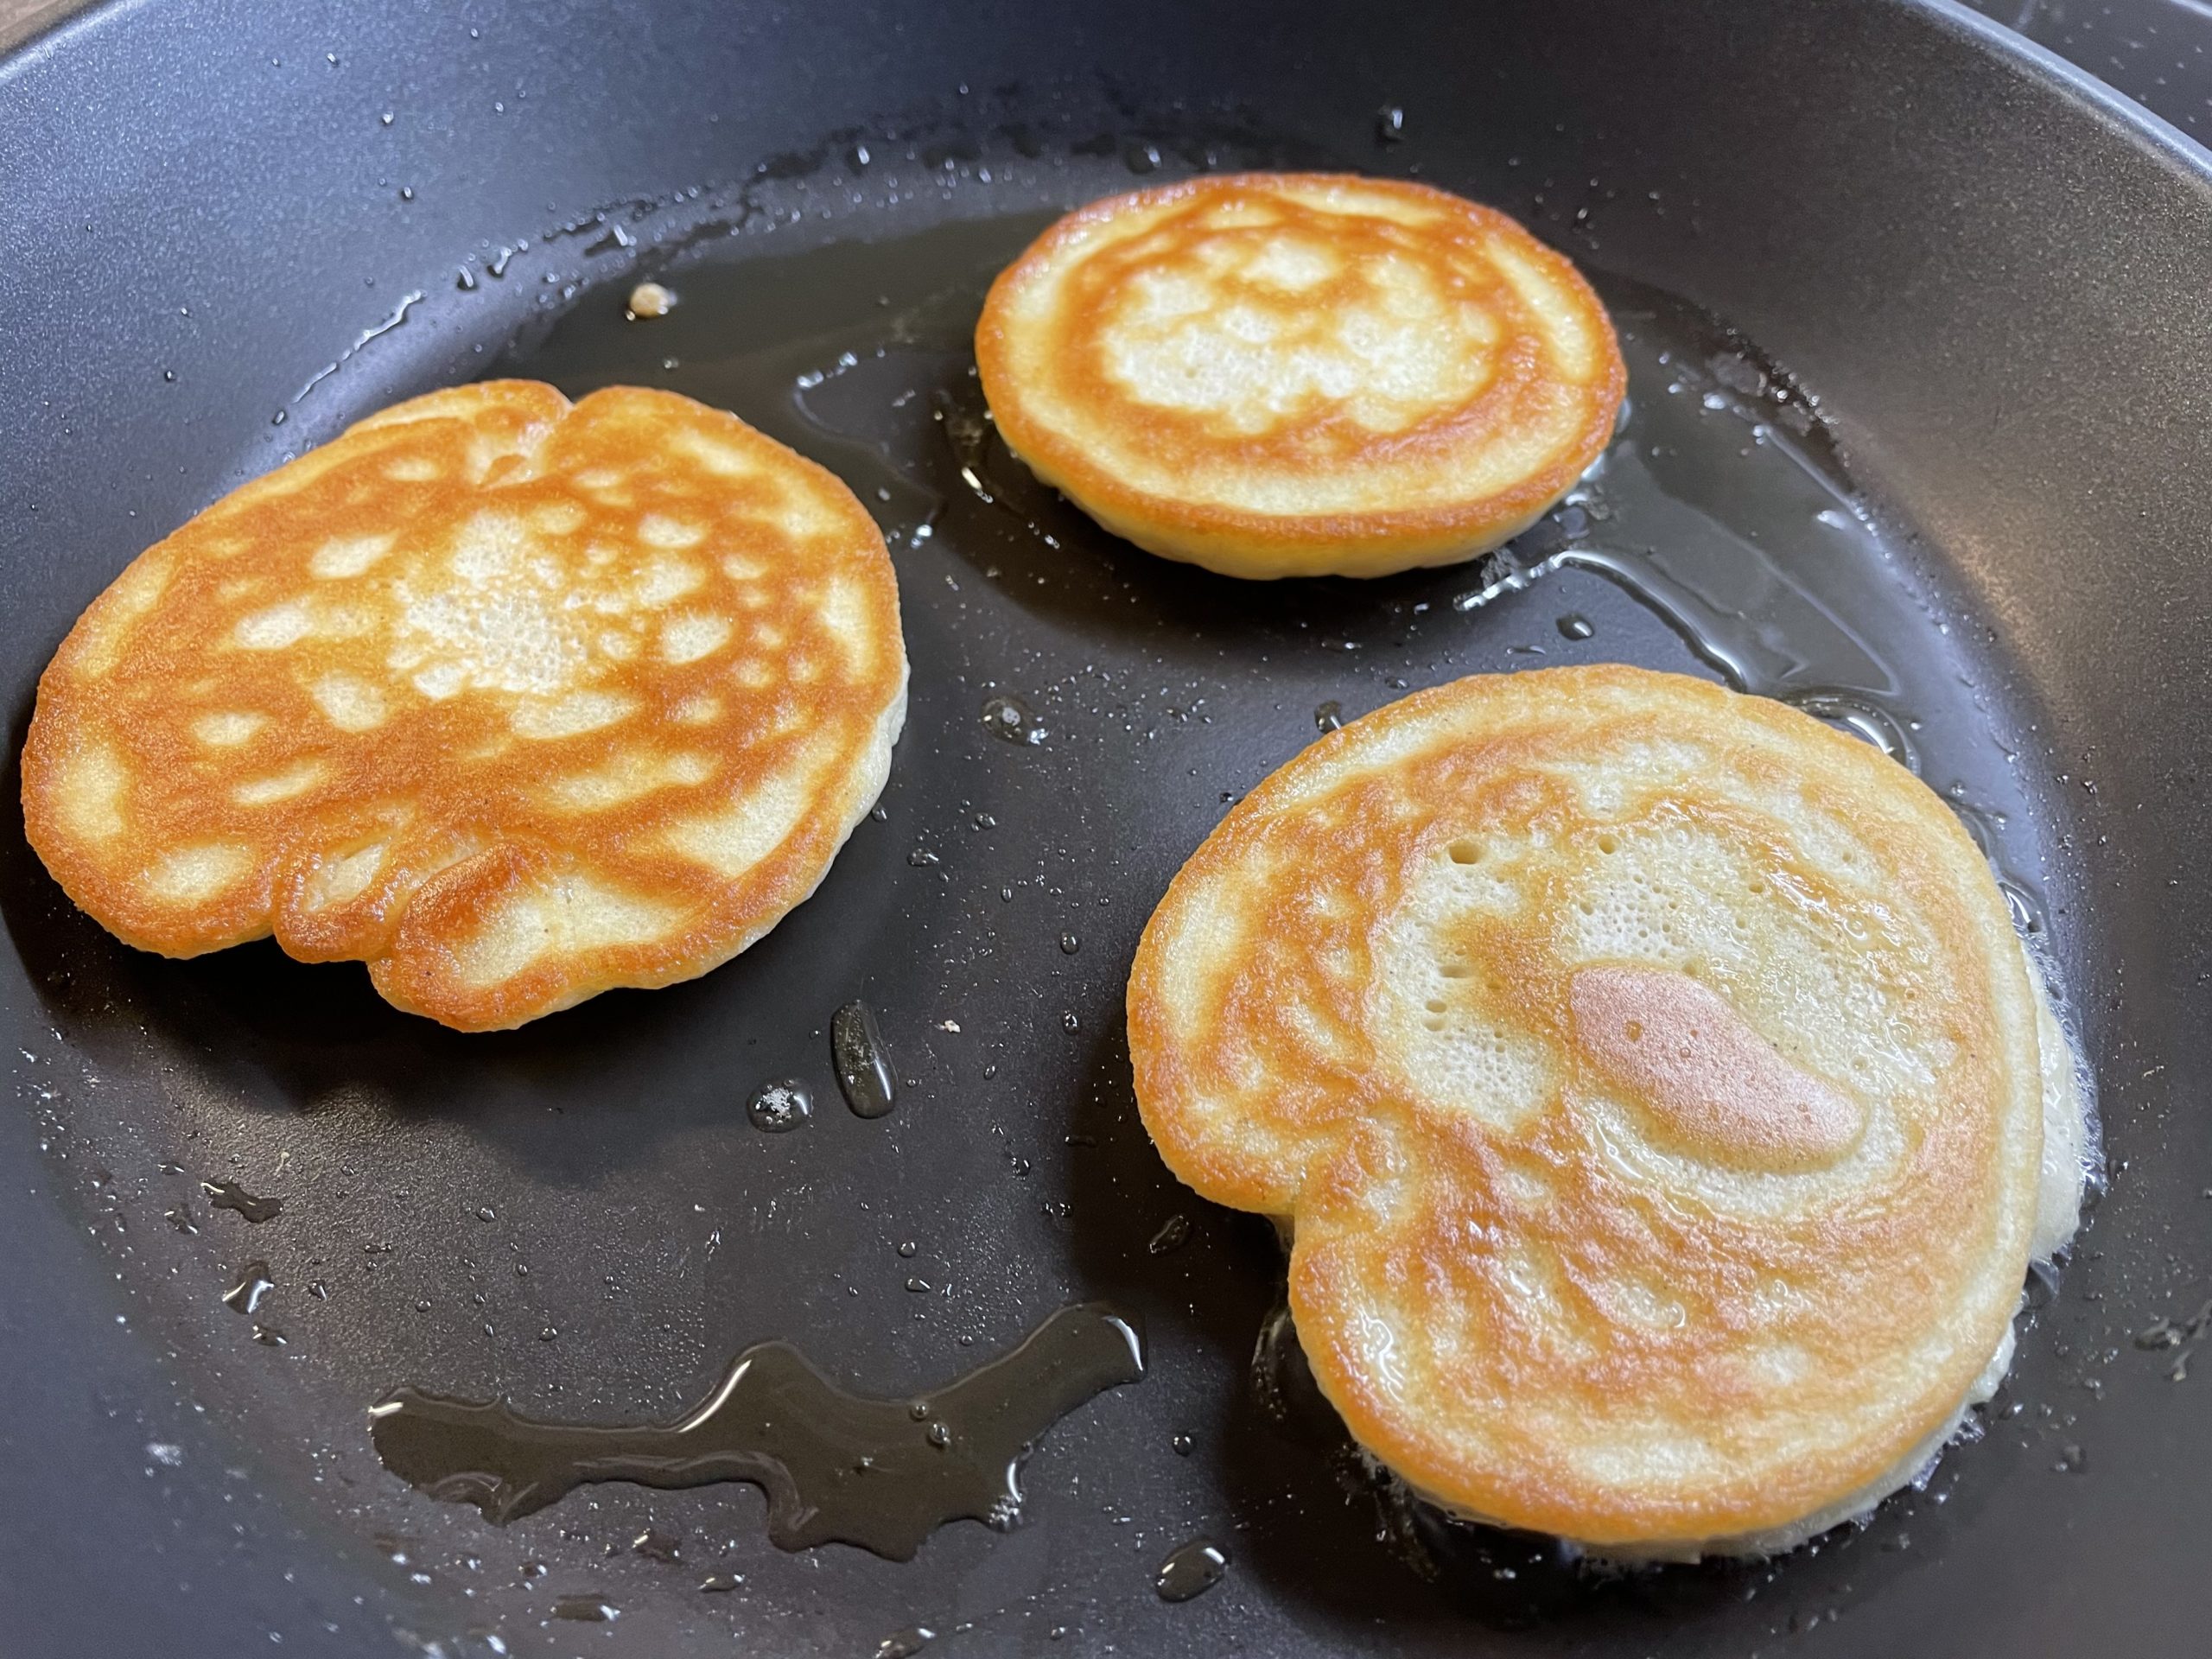 Bild zum Schritt 11 für die Kinder-Beschäftigung: 'So sehen die Pancakes jetzt aus.   Backt sie...'